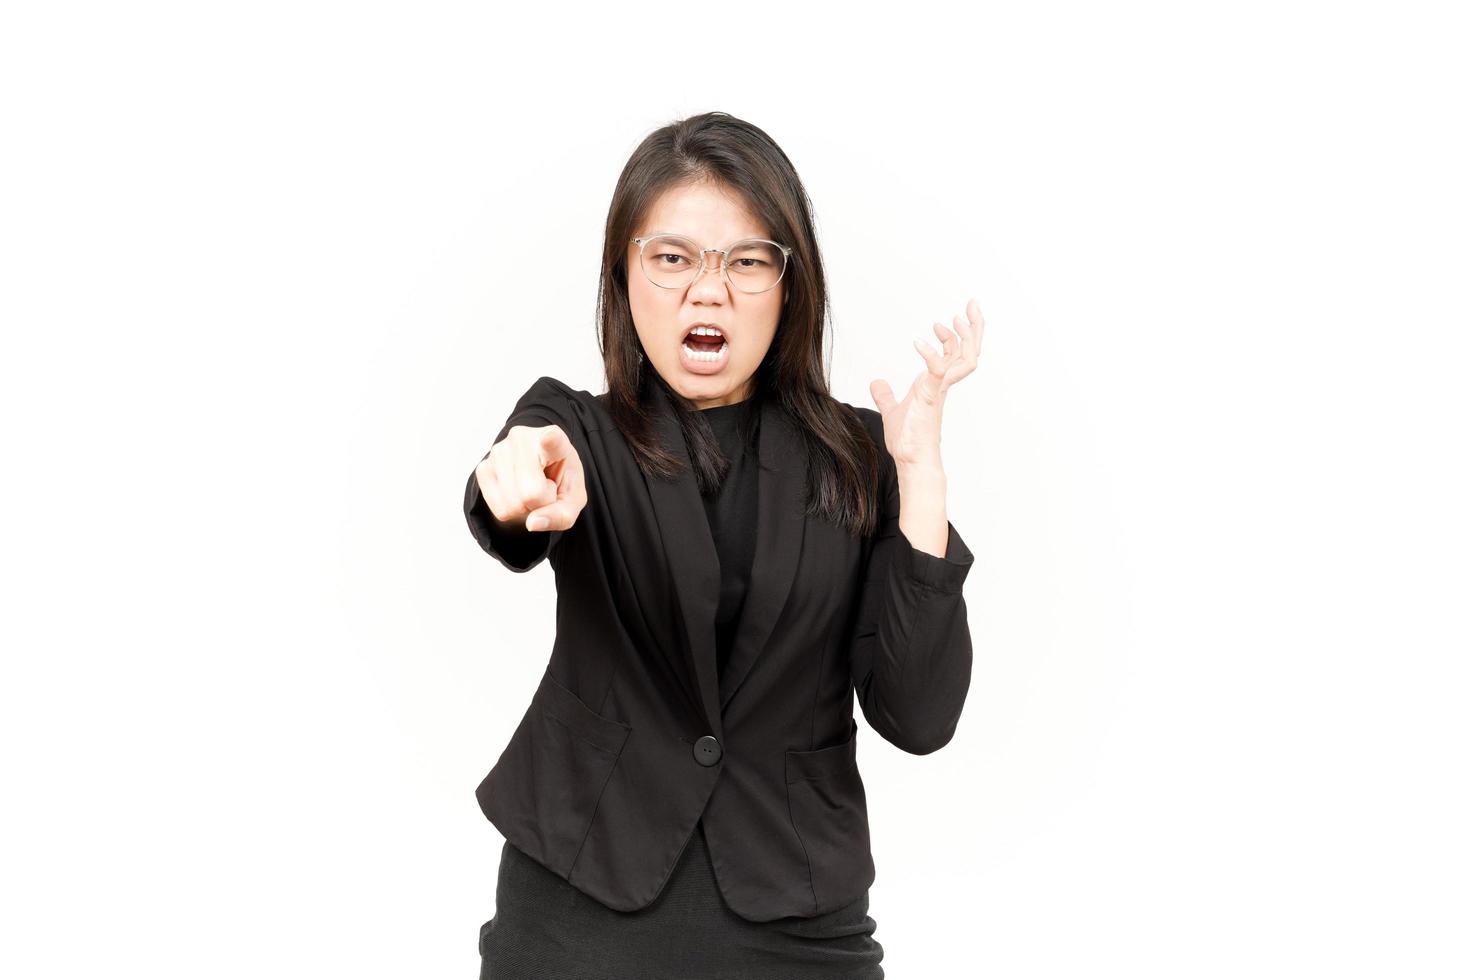 boos en richten naar camera van mooi Aziatisch vrouw vervelend zwart blazer geïsoleerd Aan wit foto